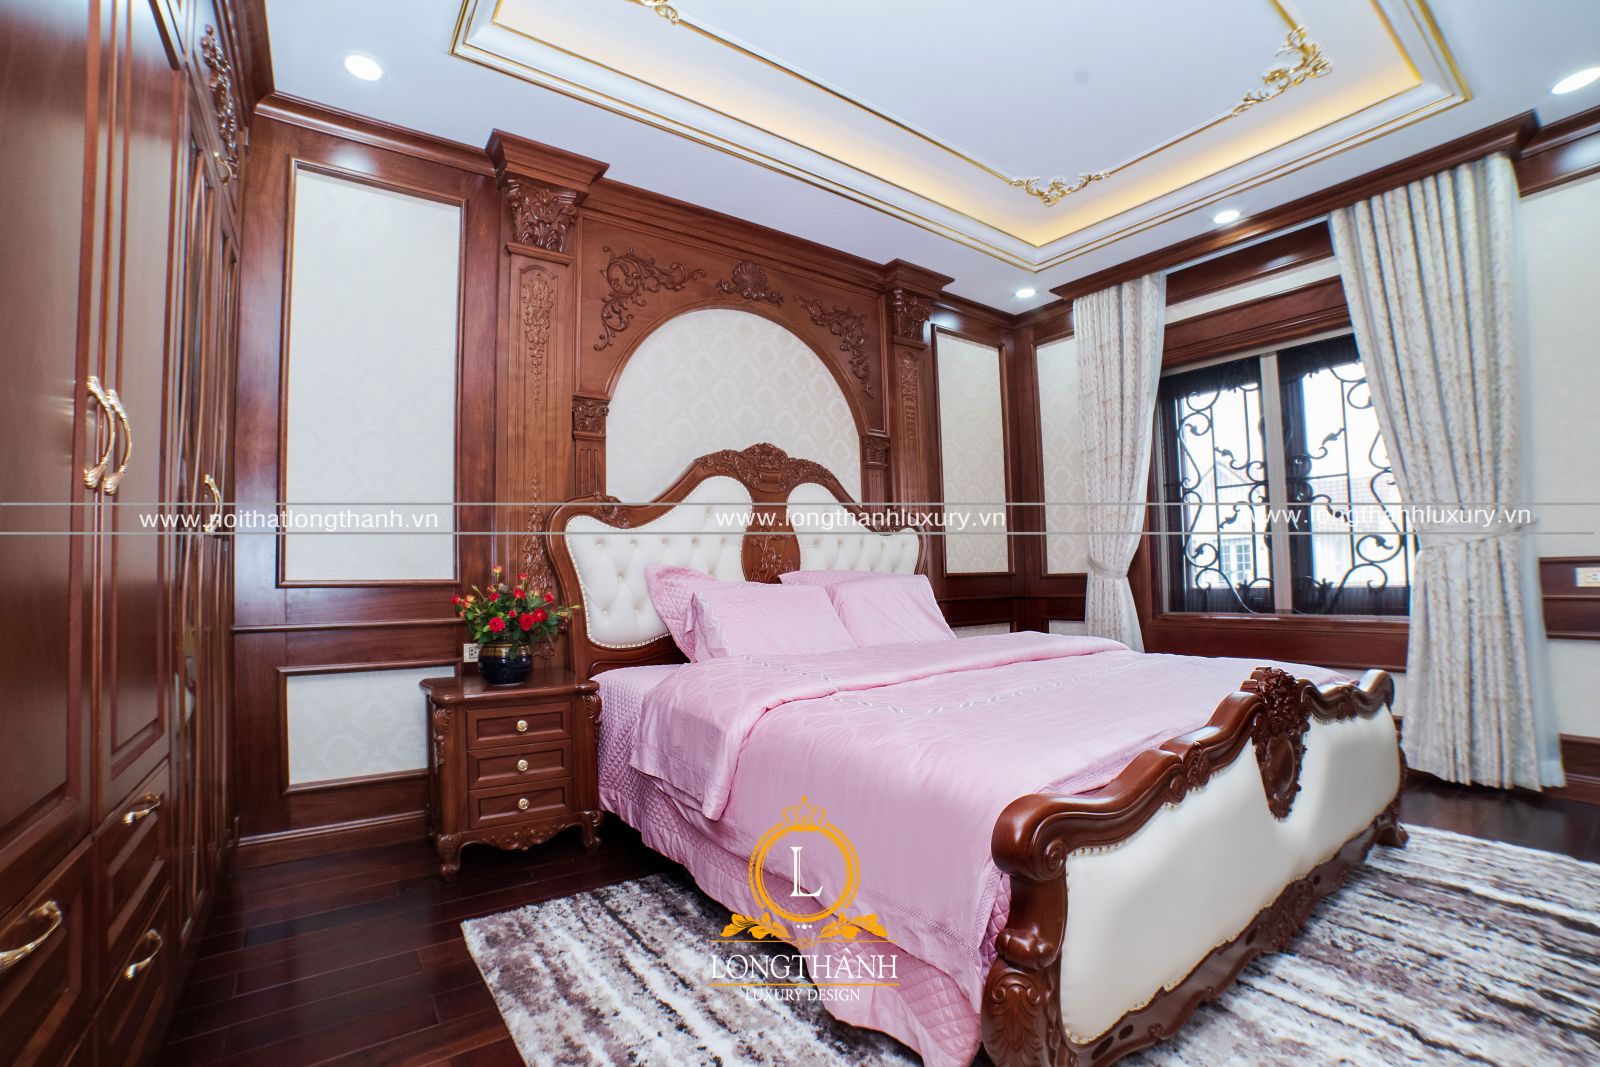 Giường ngủ tân cổ điển Móng Cái, Quảng Ninh